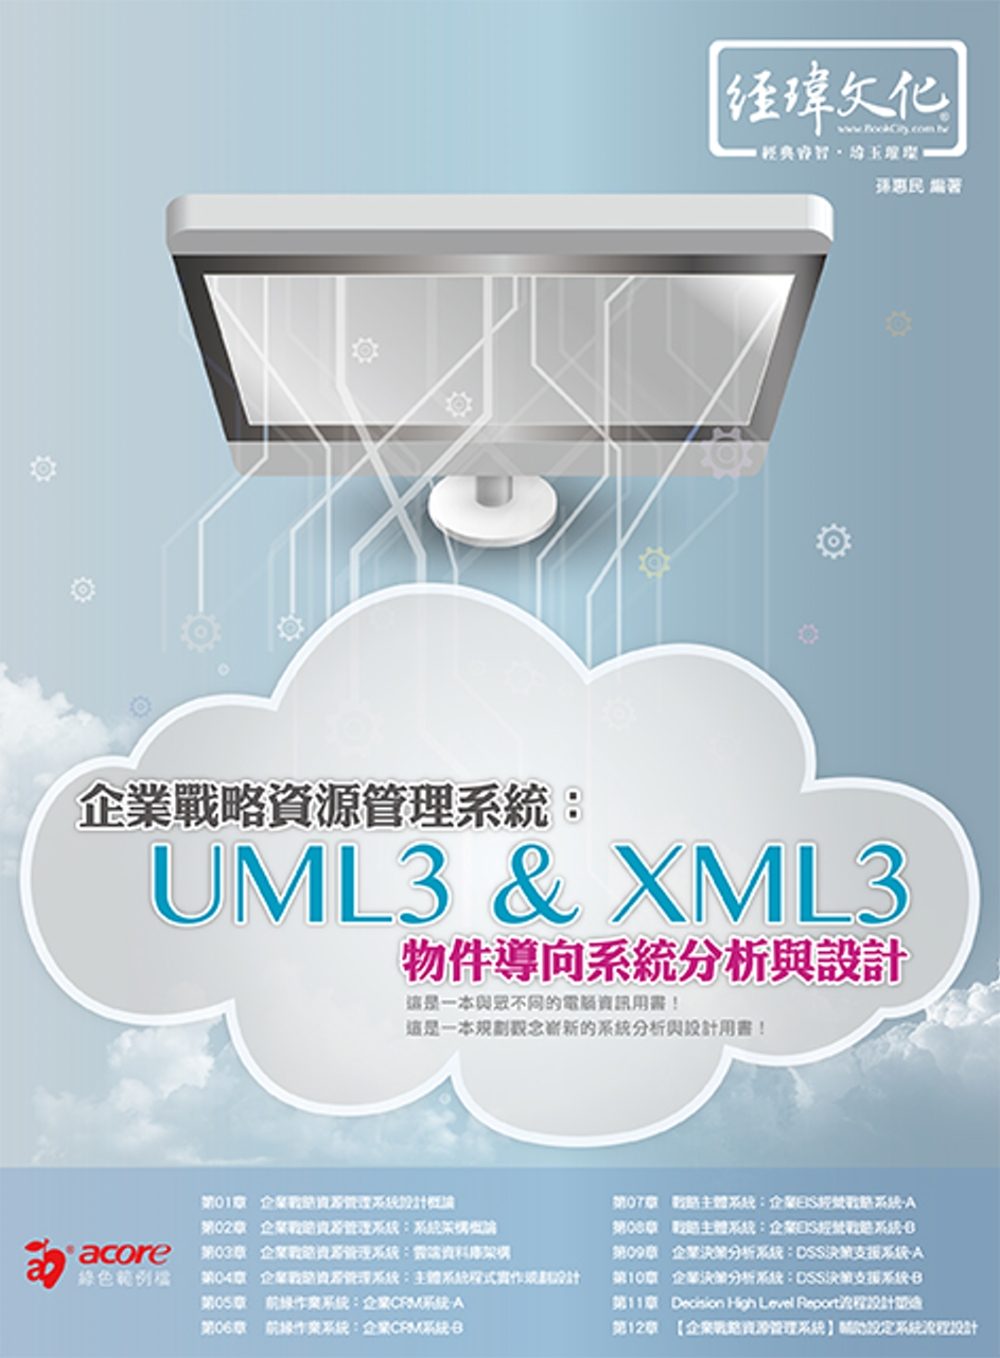 企業戰略資源管理系統：UML3